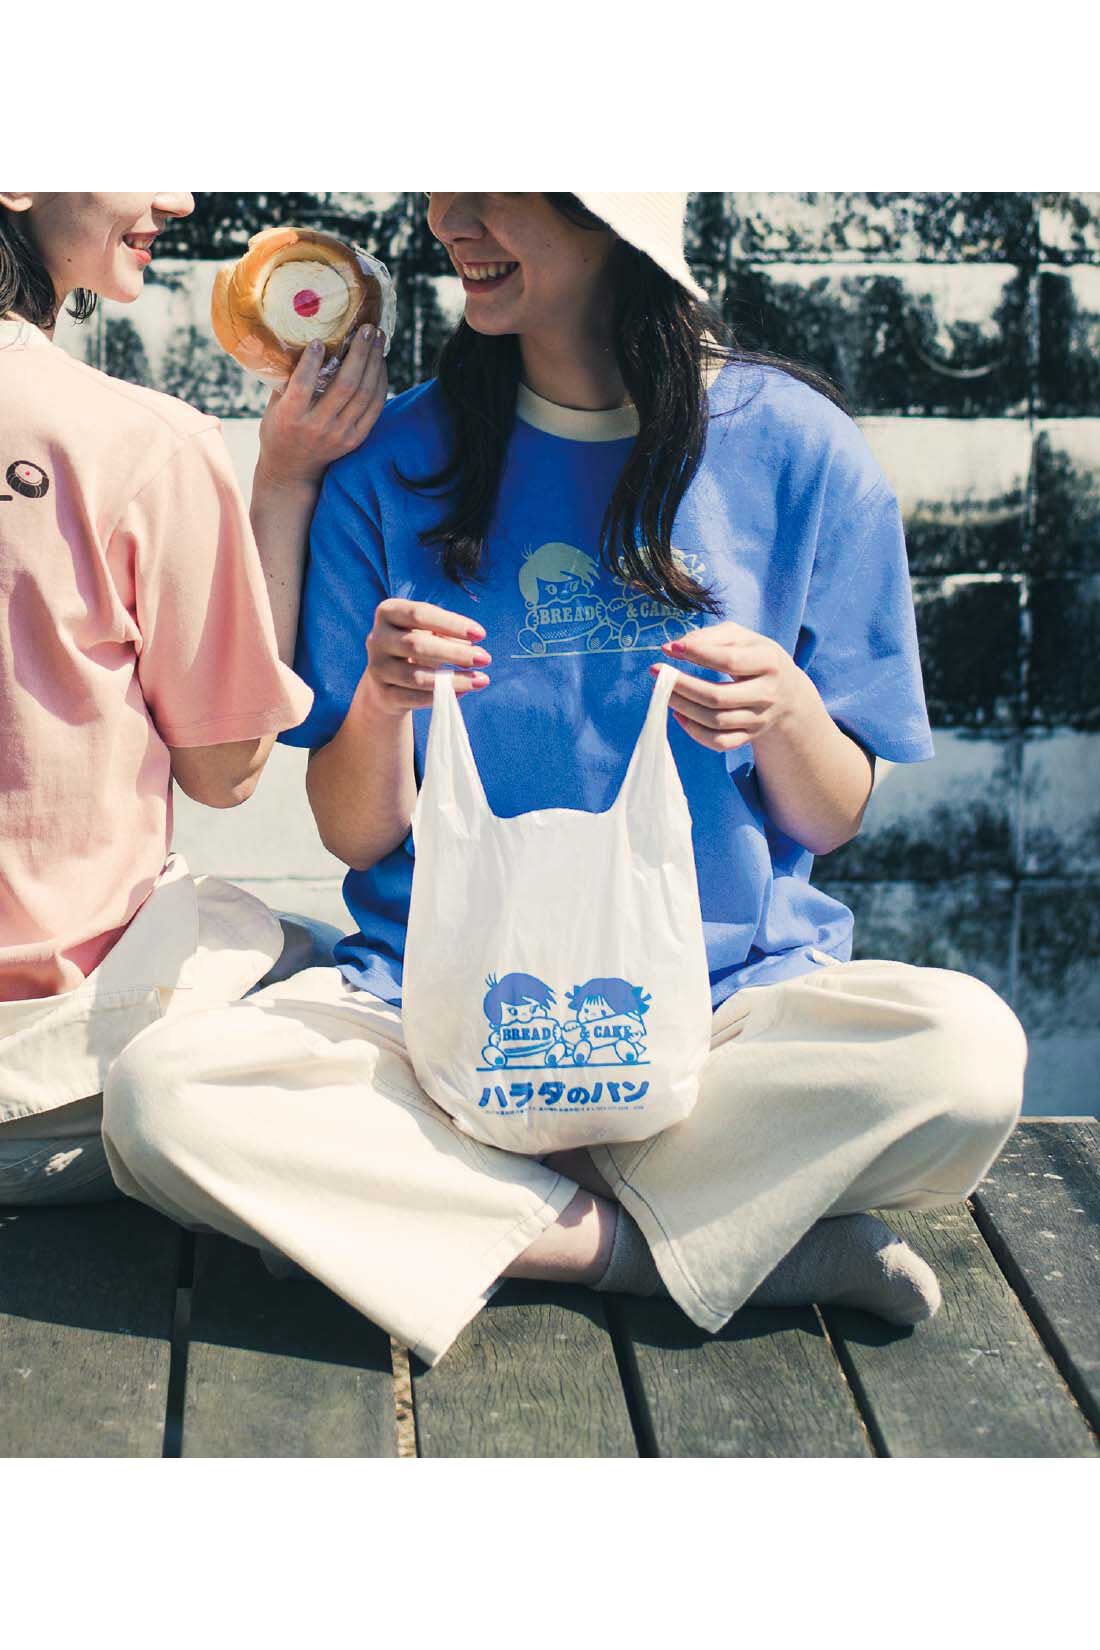 Real Stock|Live love cottonプロジェクト リブ イン コンフォート神戸のベーカリーハラダのパンさんとつくったオーガニックコットンのレトロかわいいTシャツ〈ジェイブルー〉